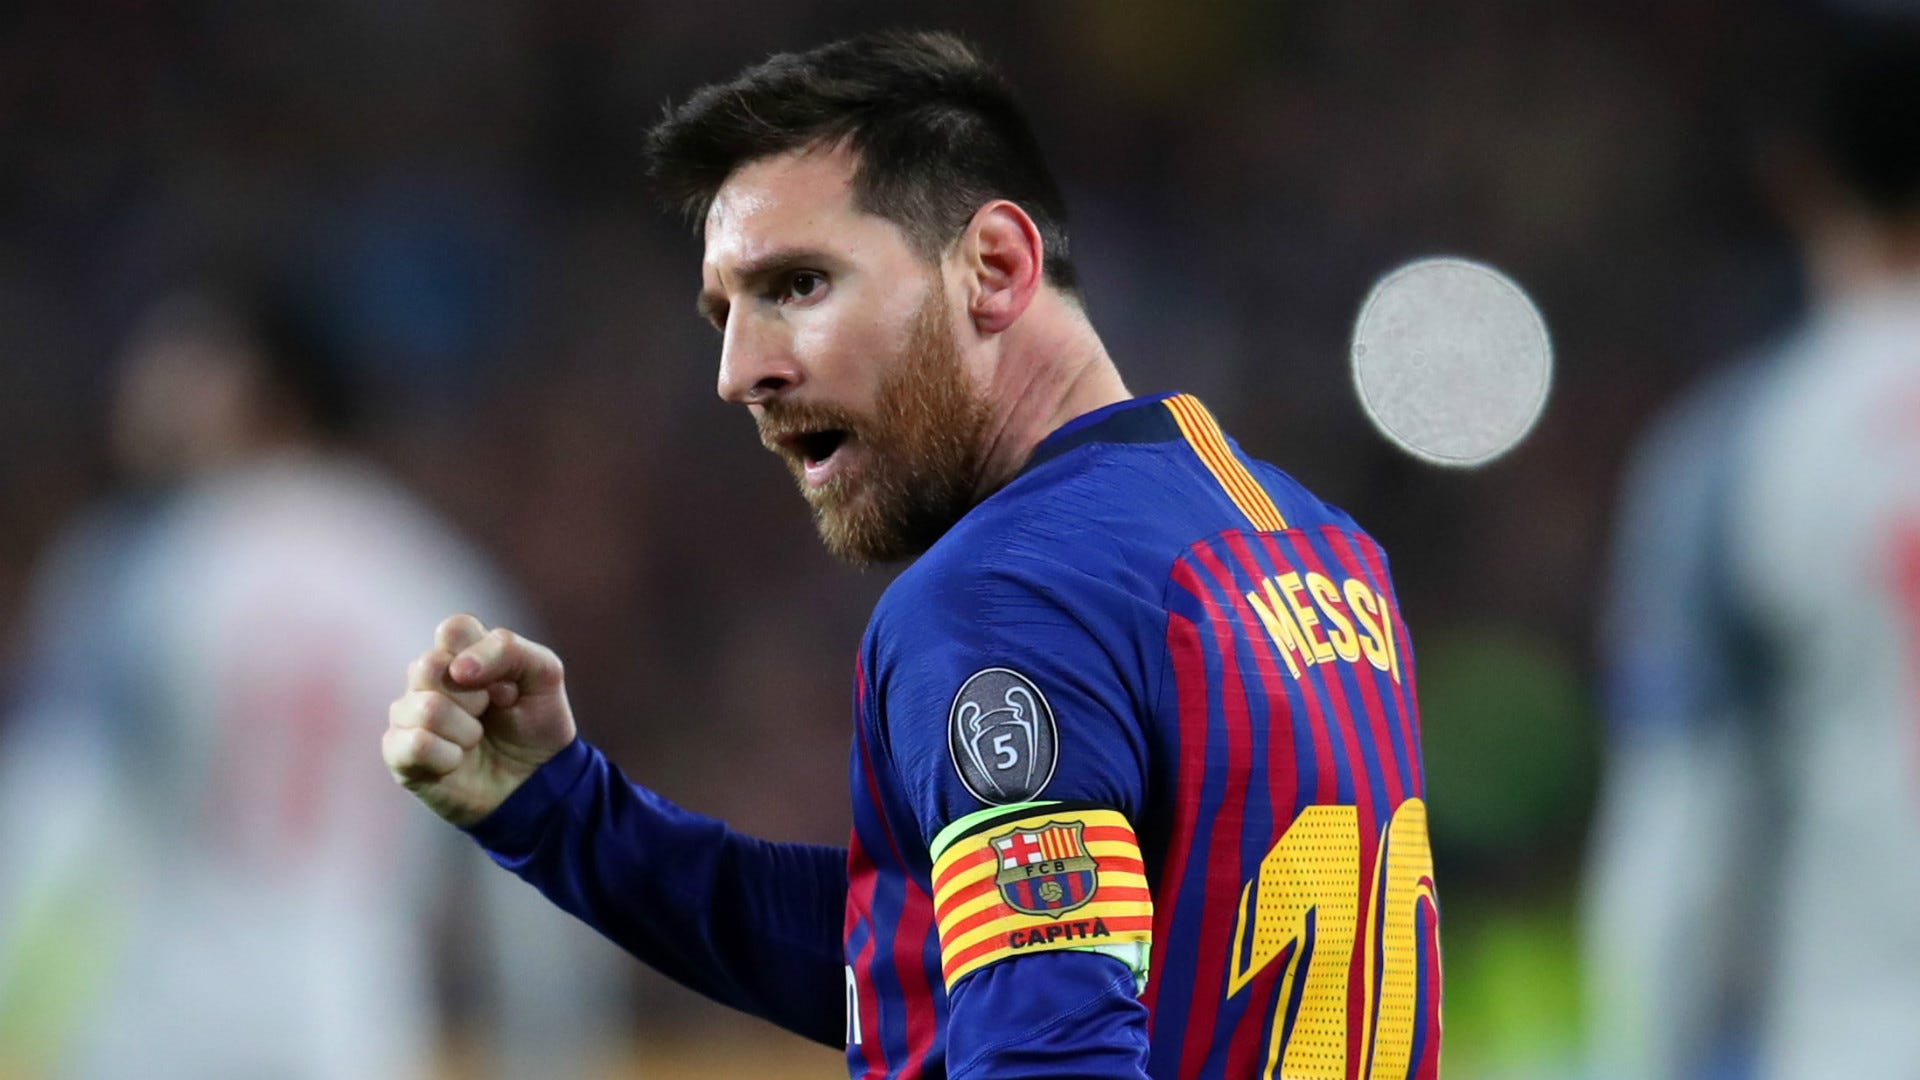 Hãy cùng nhau theo dõi tin tức về Lionel Messi - cầu thủ bóng đá kỳ cựu và xuất sắc nhất của Barcelona. Chắc chắn bạn sẽ không thể bỏ qua những thông tin mới nhất và hình ảnh đẹp của anh.